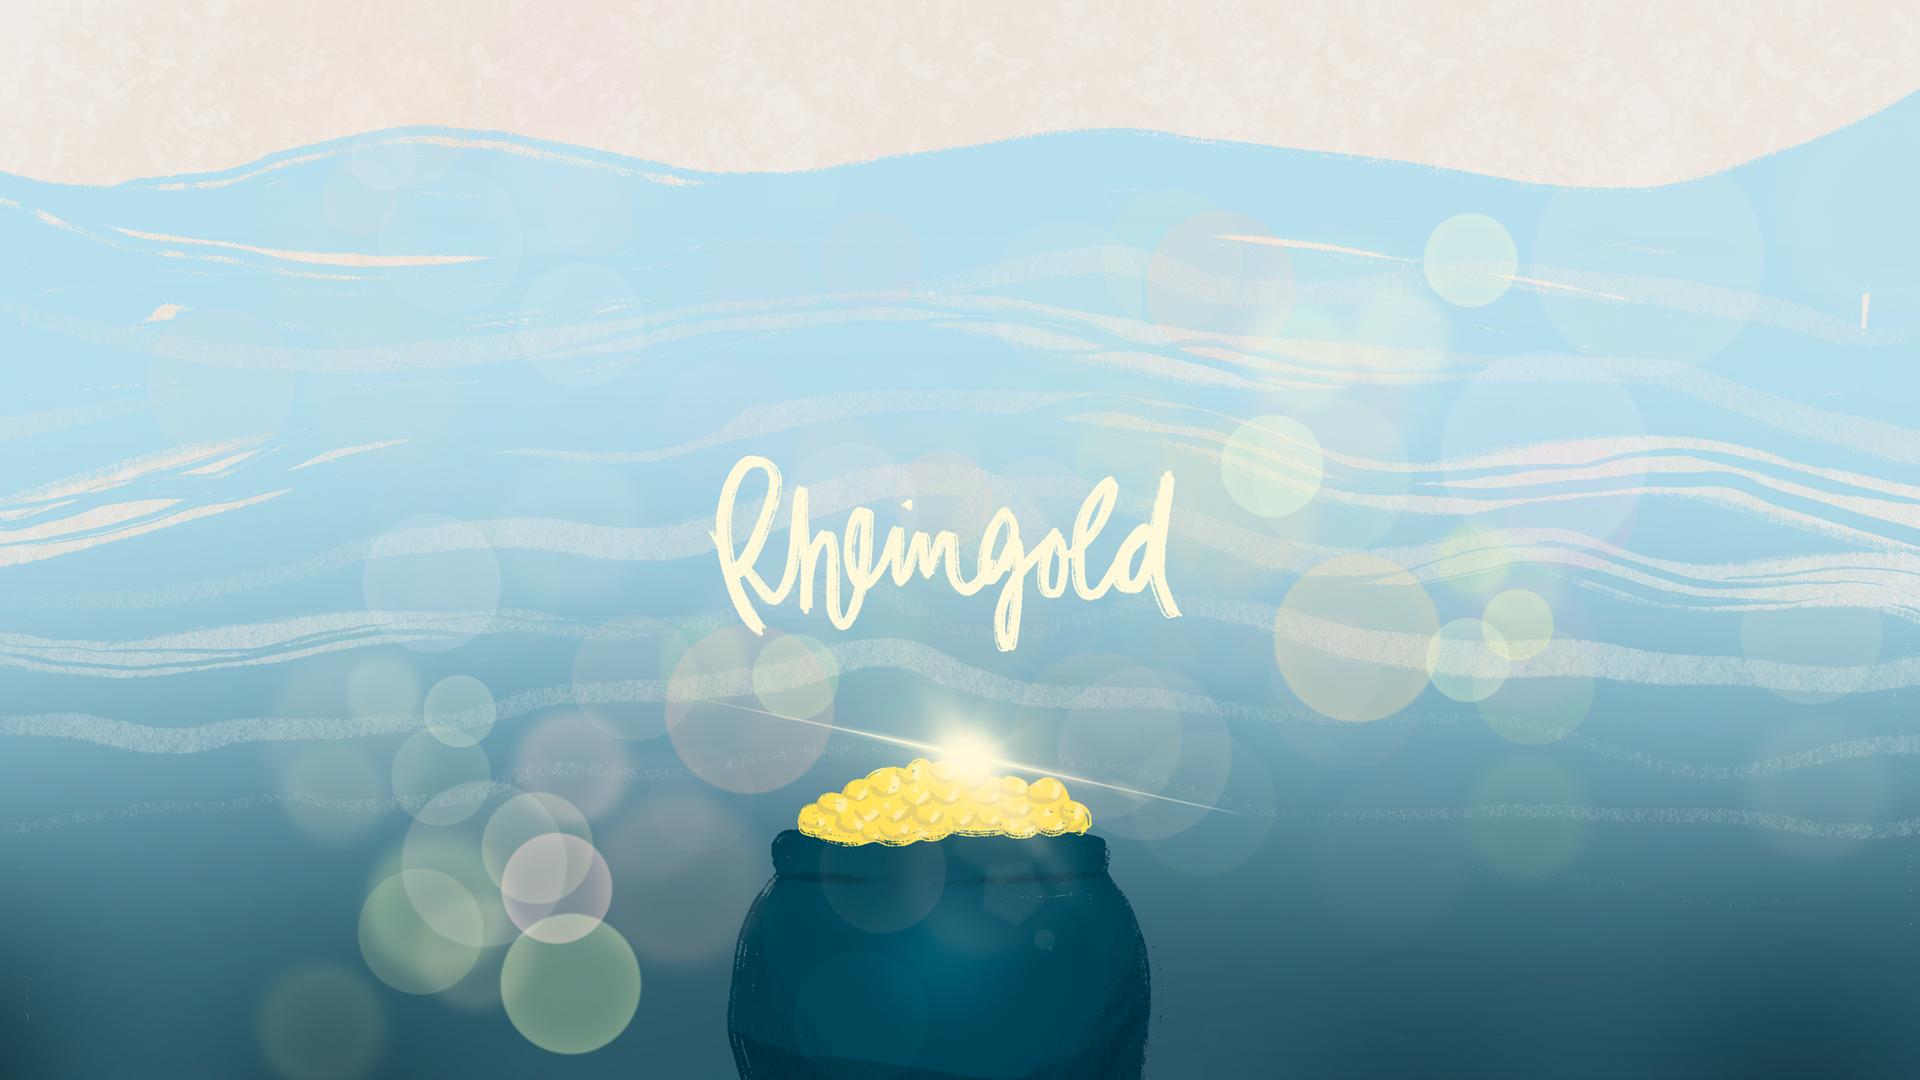 Eine Illustration zeigt einen leuchtenden Topf voller Gold tief unter dem Wasser.